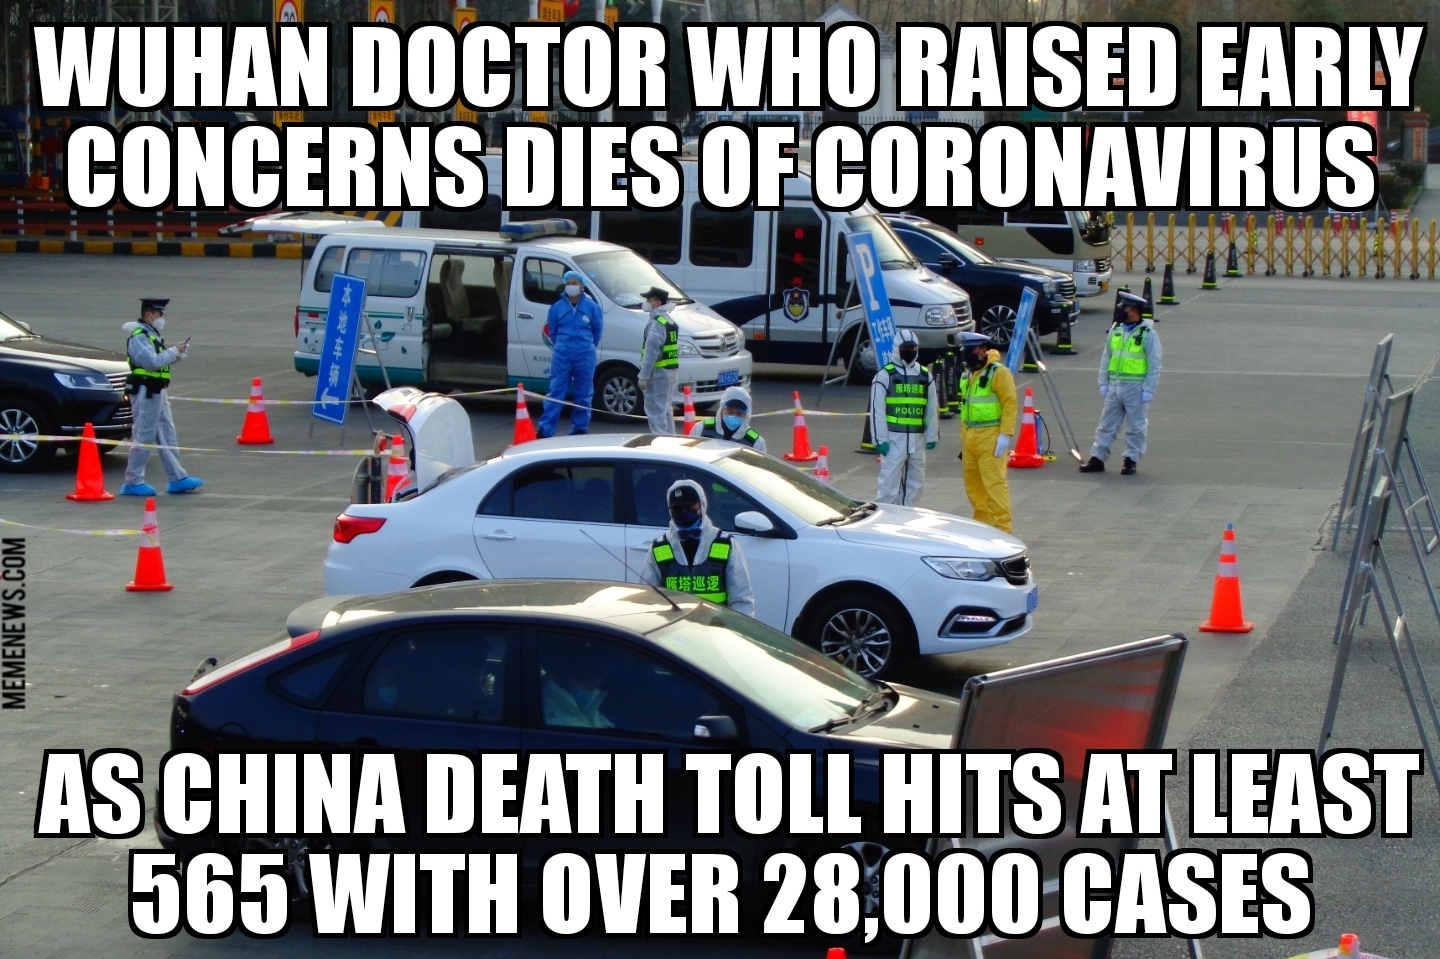 Wuhan whistleblower doctor dies of coronavirus